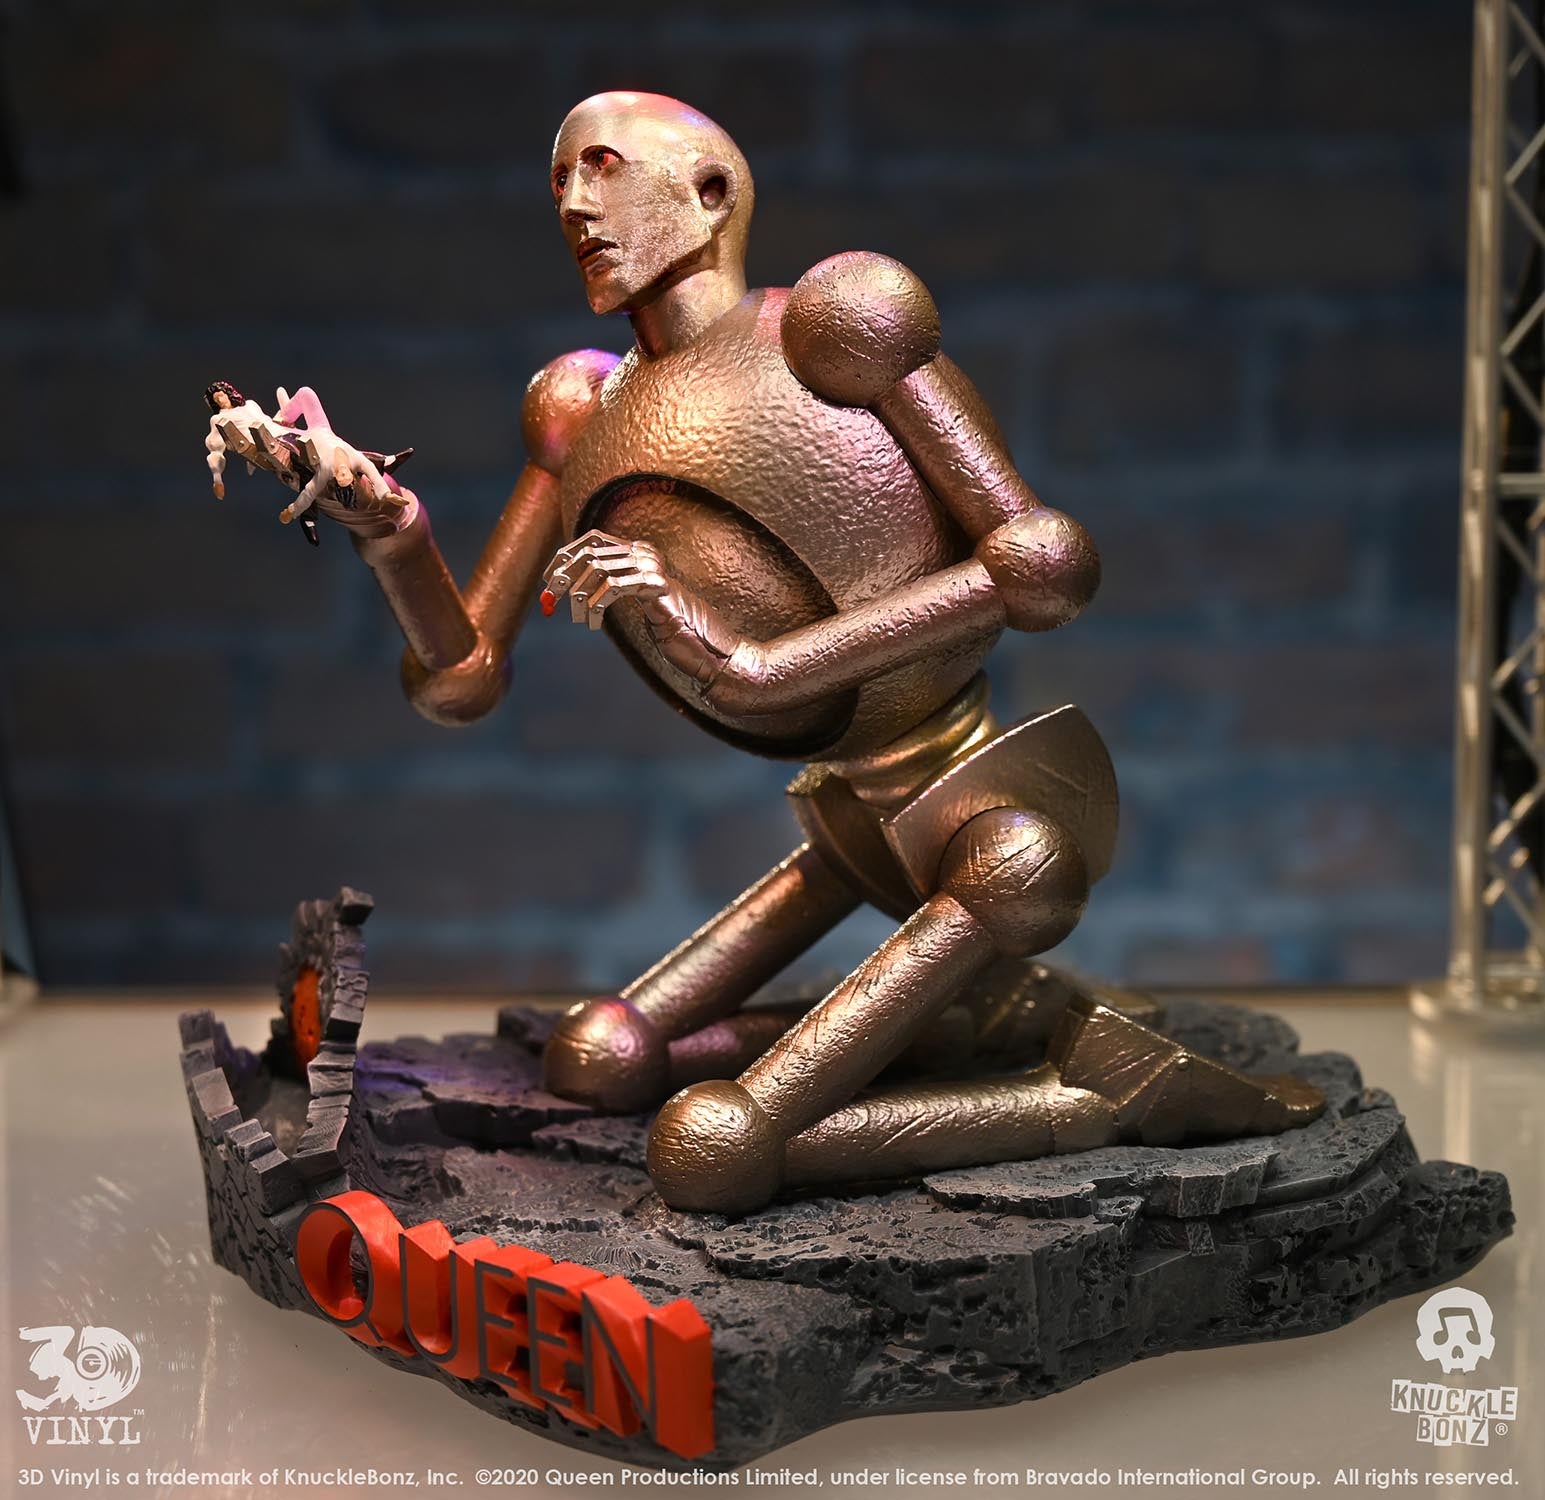 Queen Robot KnuckleBonz Statue